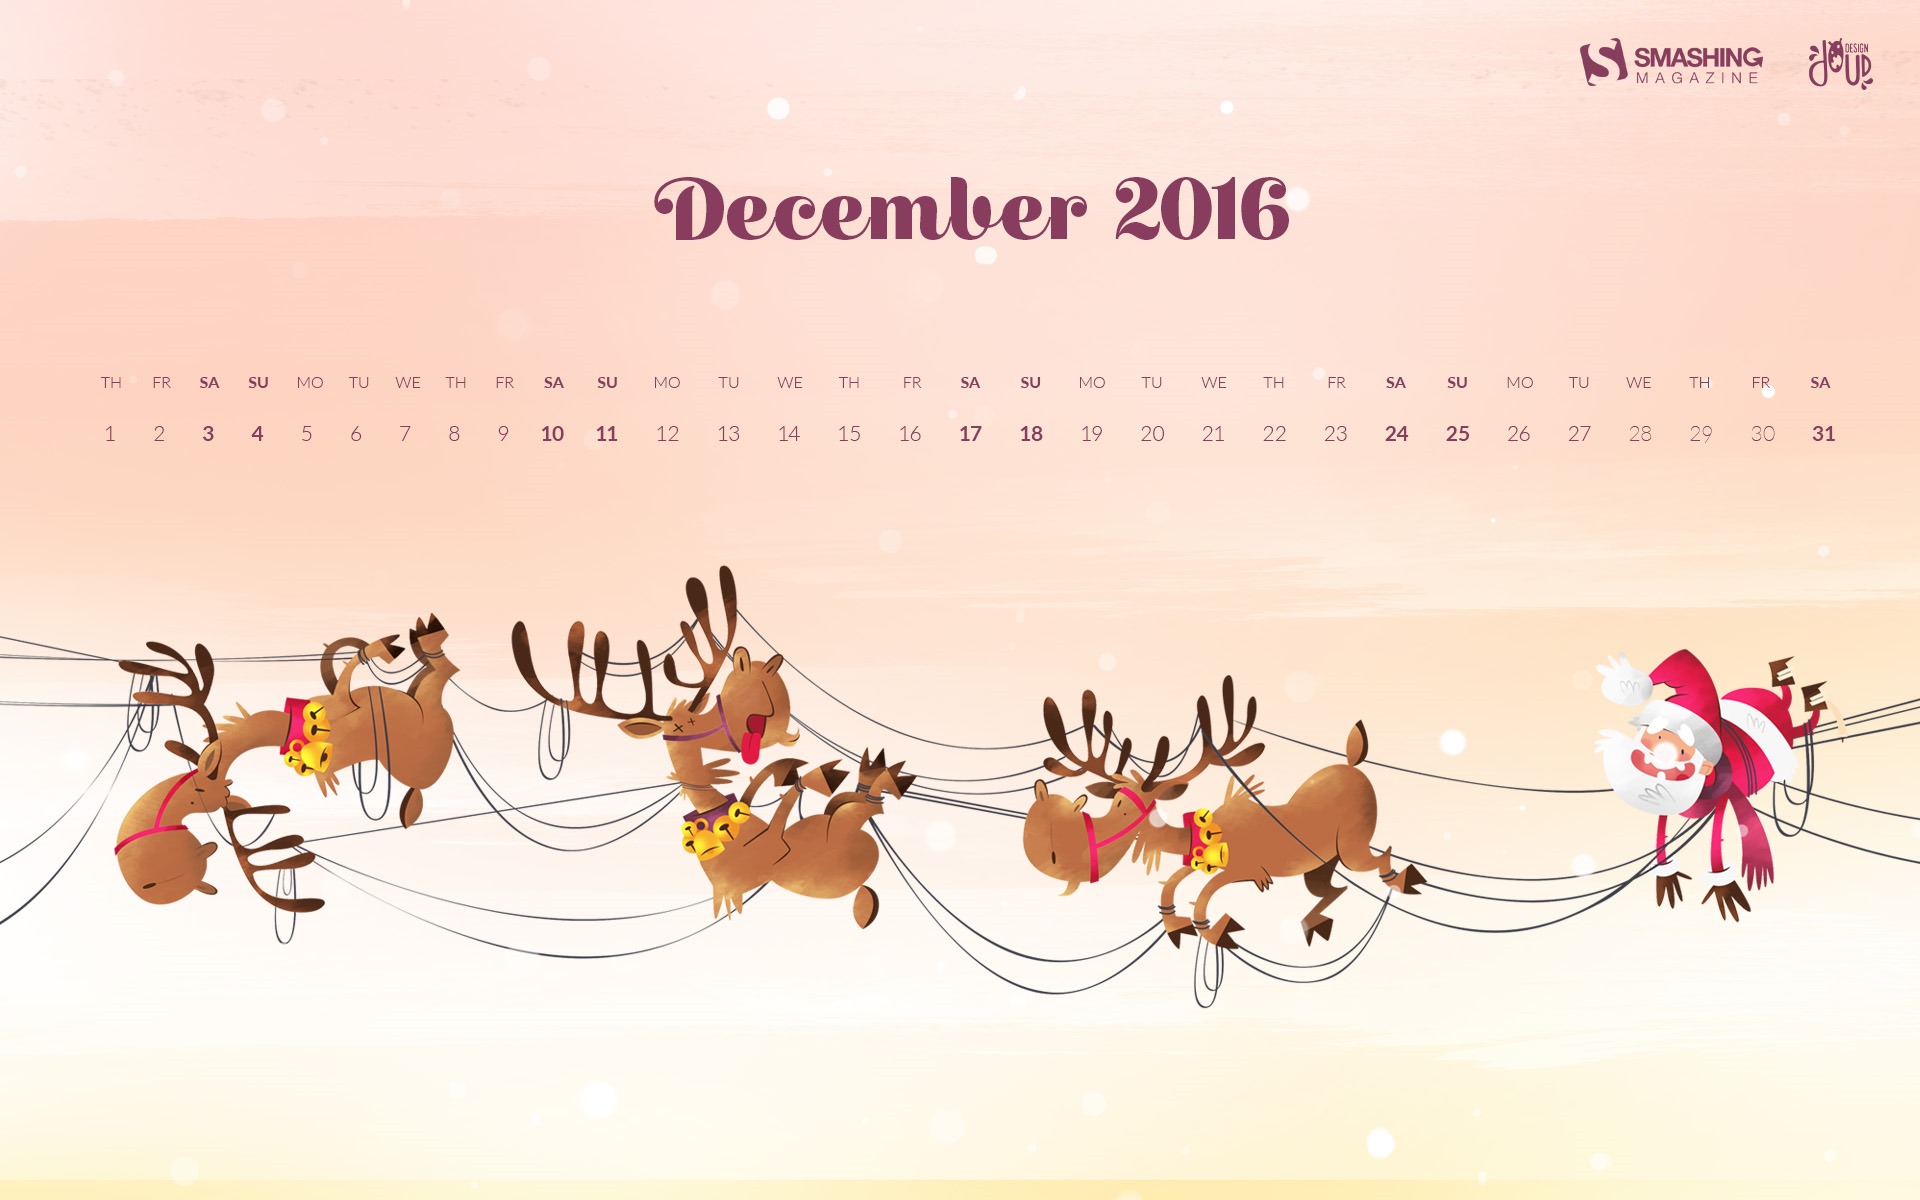 December 2016 Christmas theme calendar wallpaper (1) #13 - 1920x1200